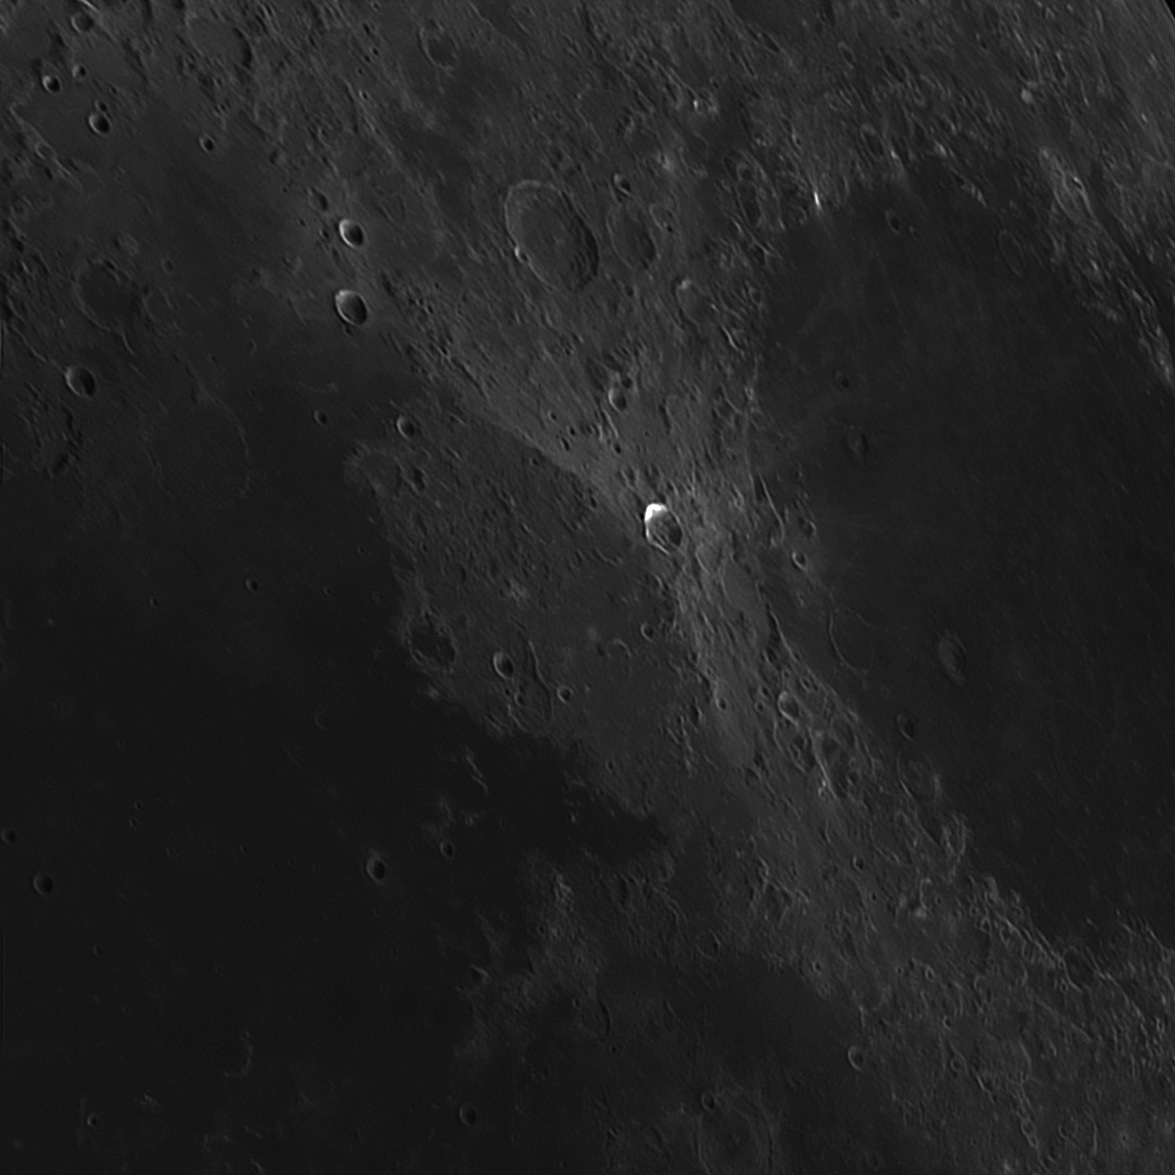 Moon-5.jpg